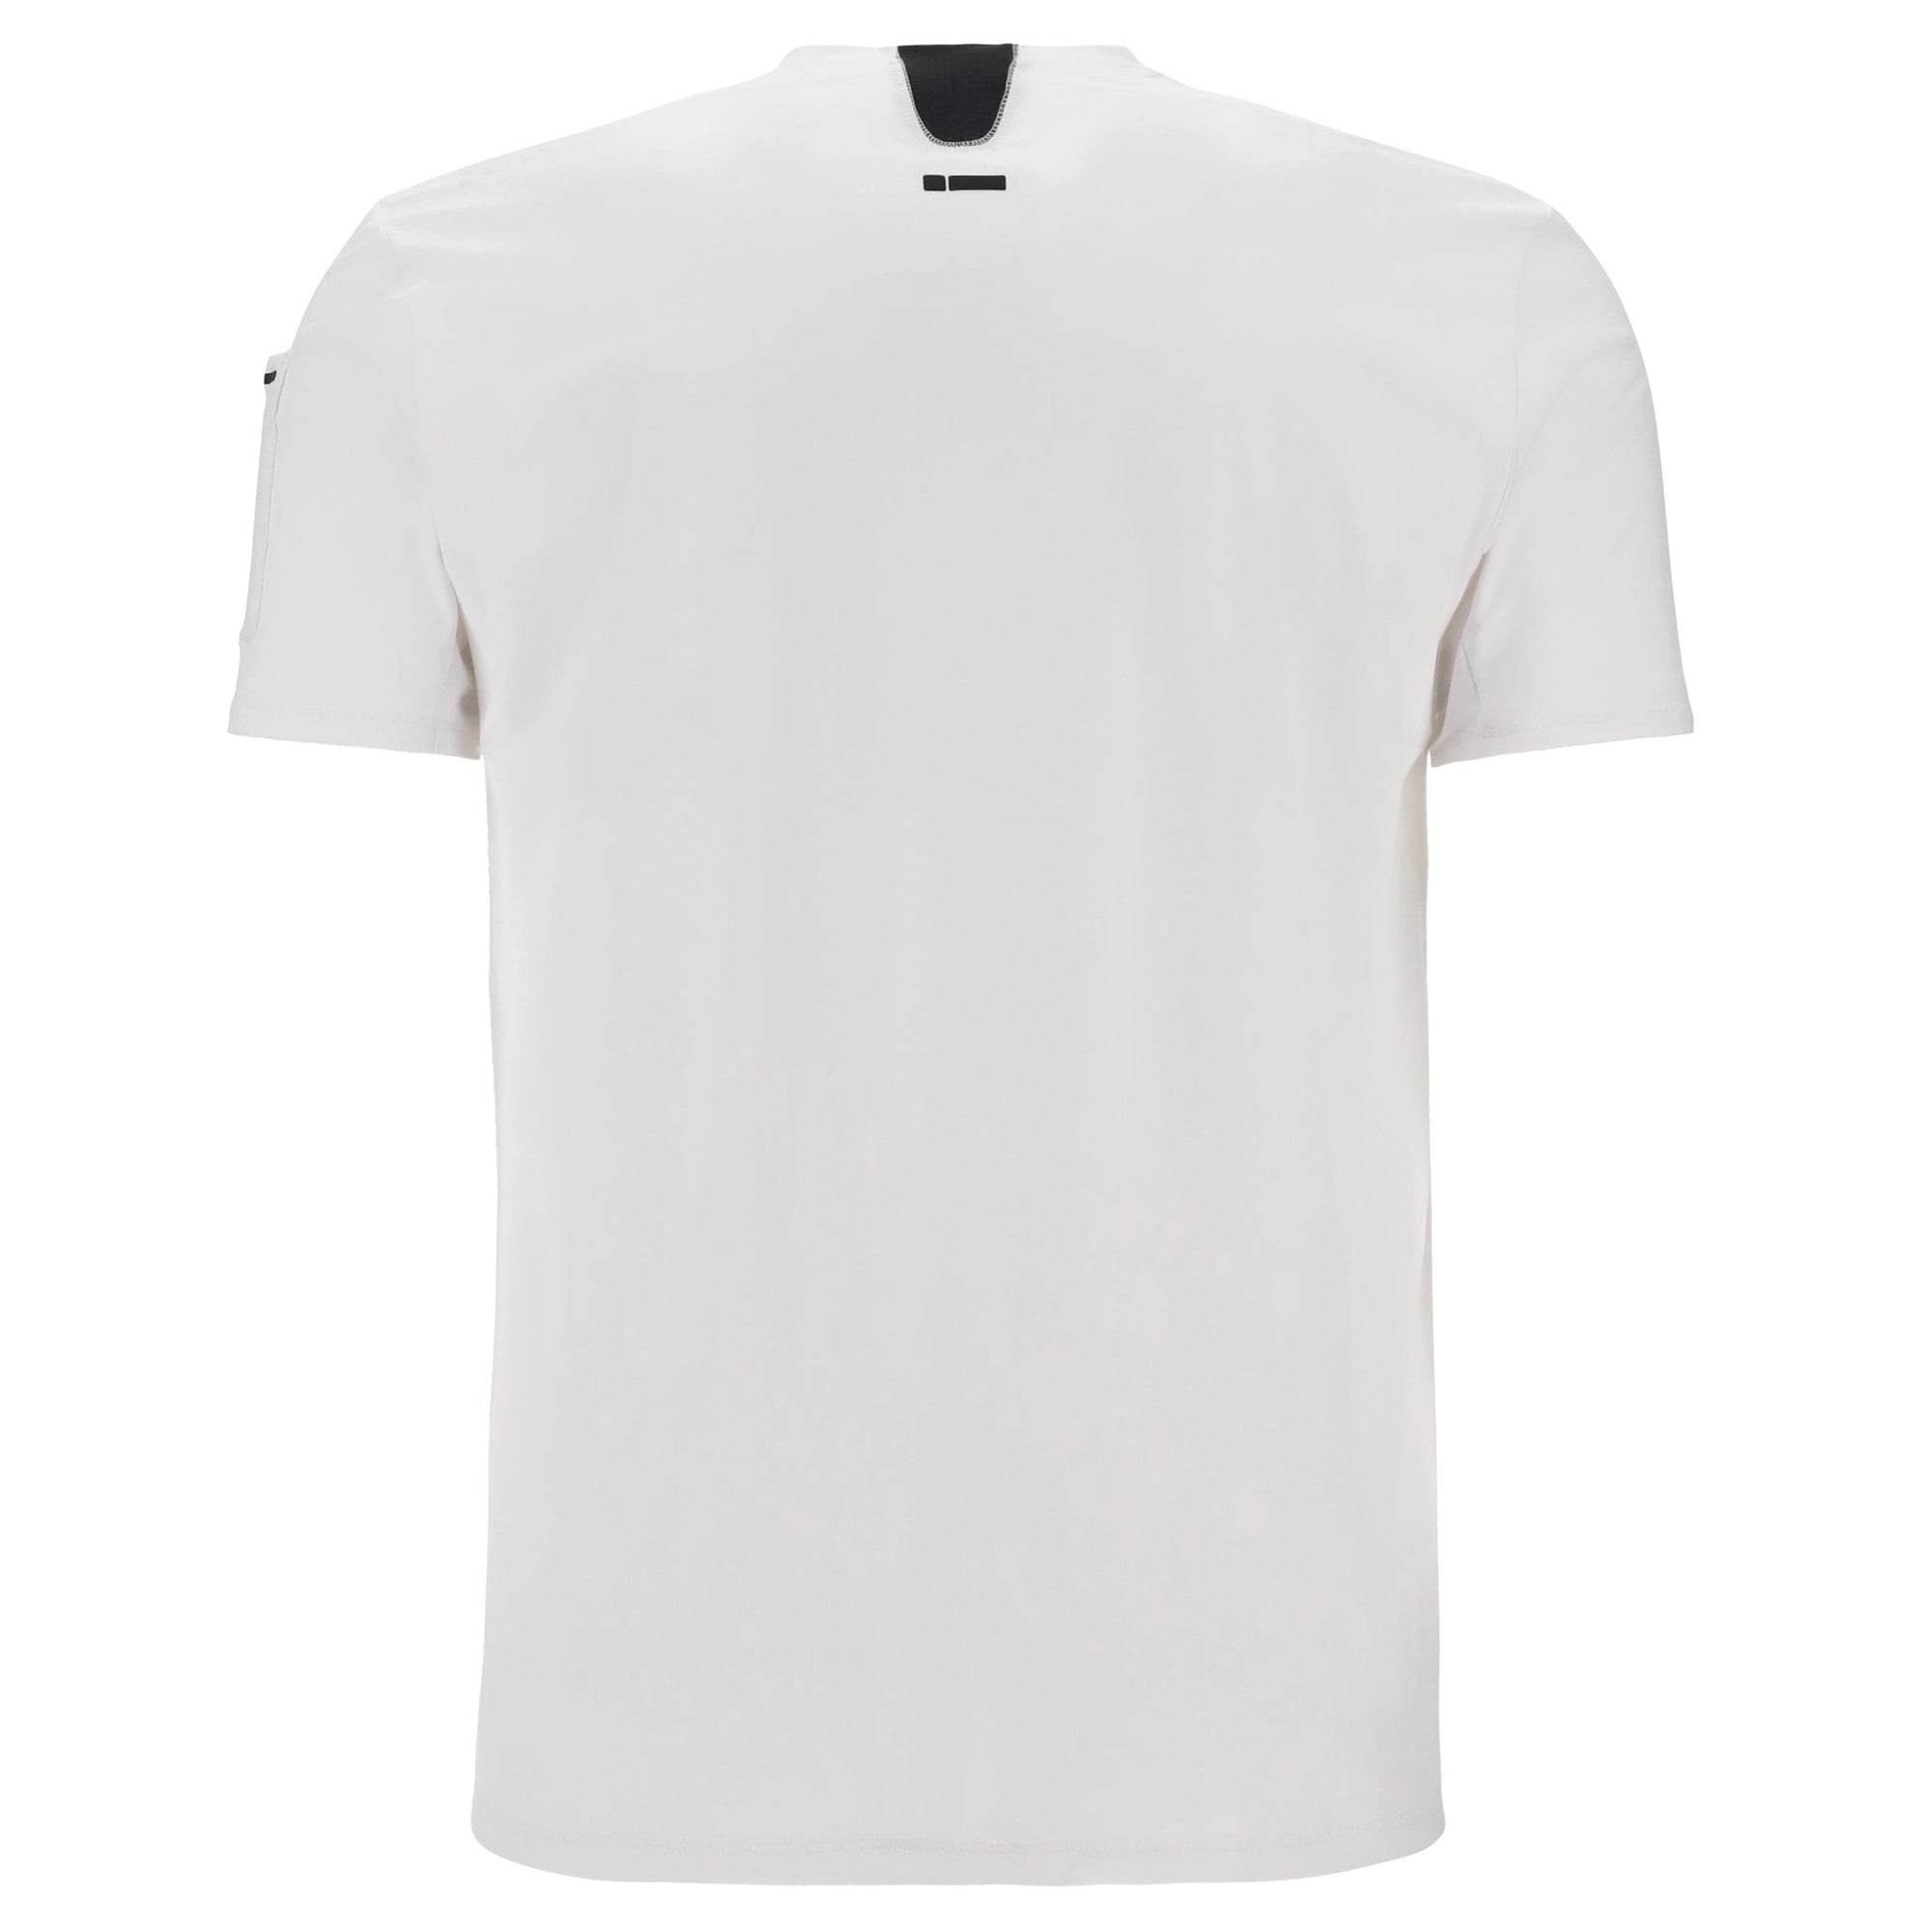 Mens Hi Tech Diwo T Shirt - White 2